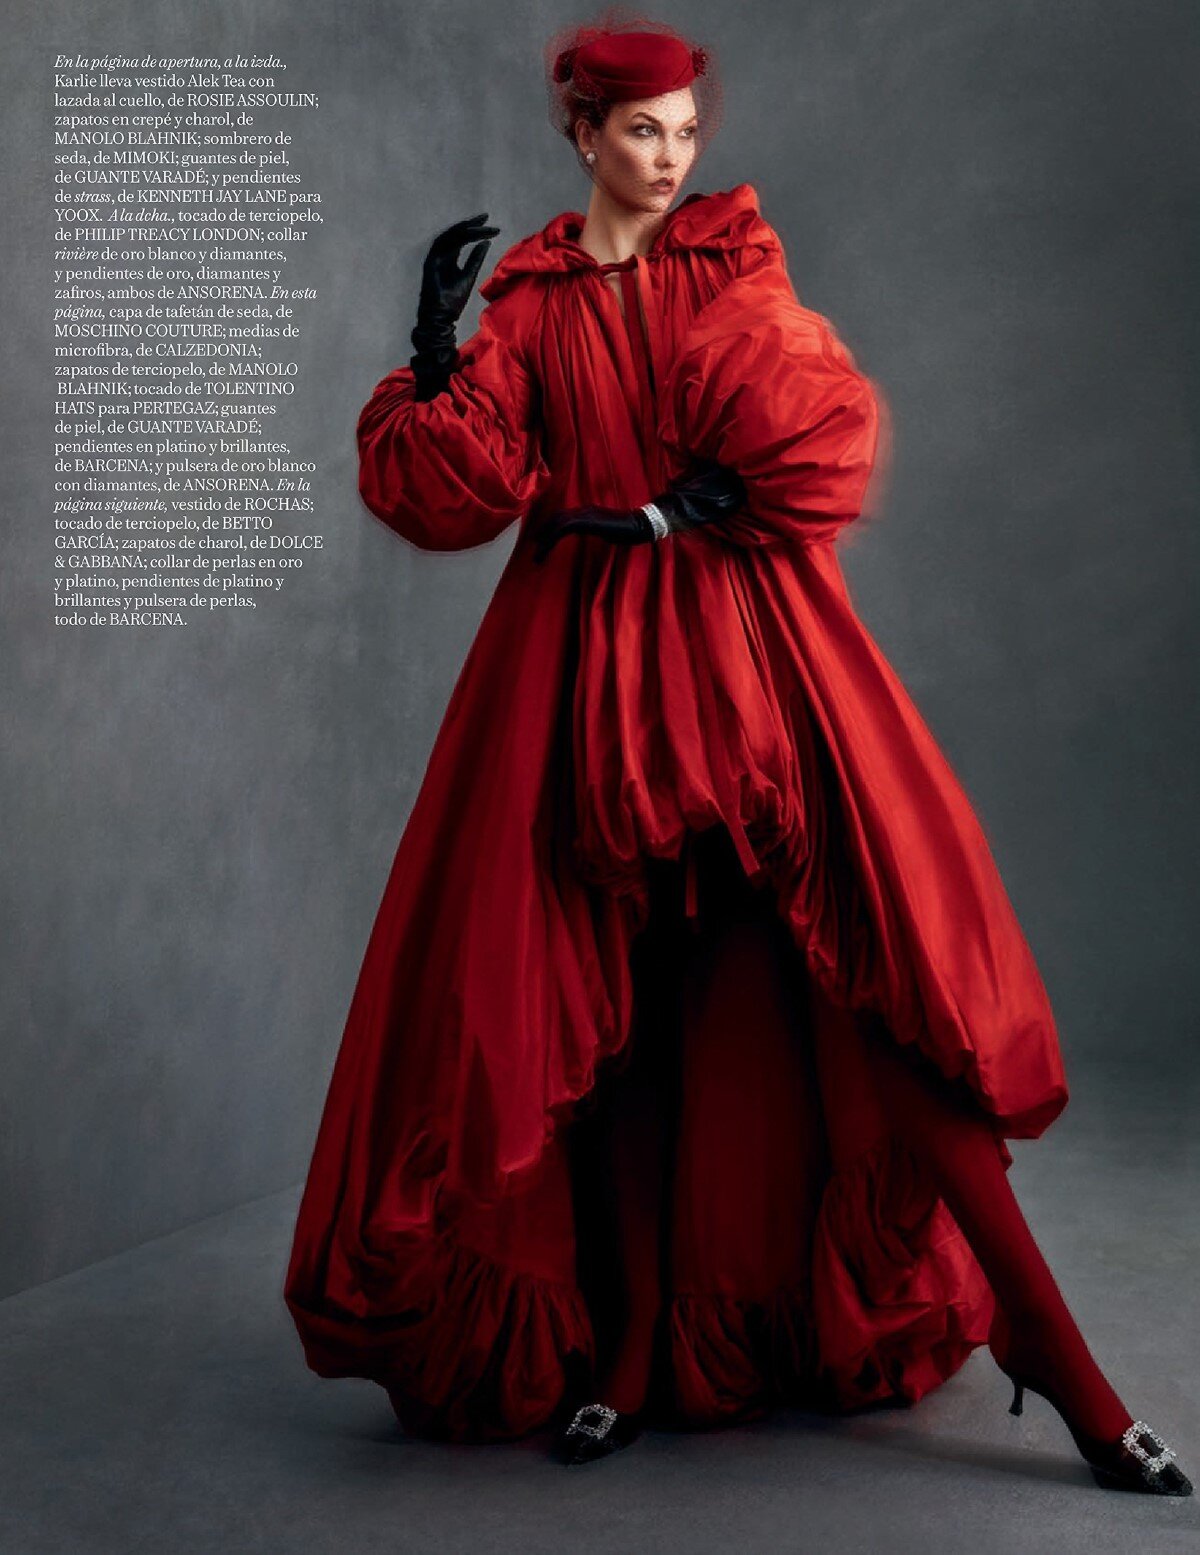 Karlie kloss by Txema Yeste for Vogue Spain December 2019 (5).jpg